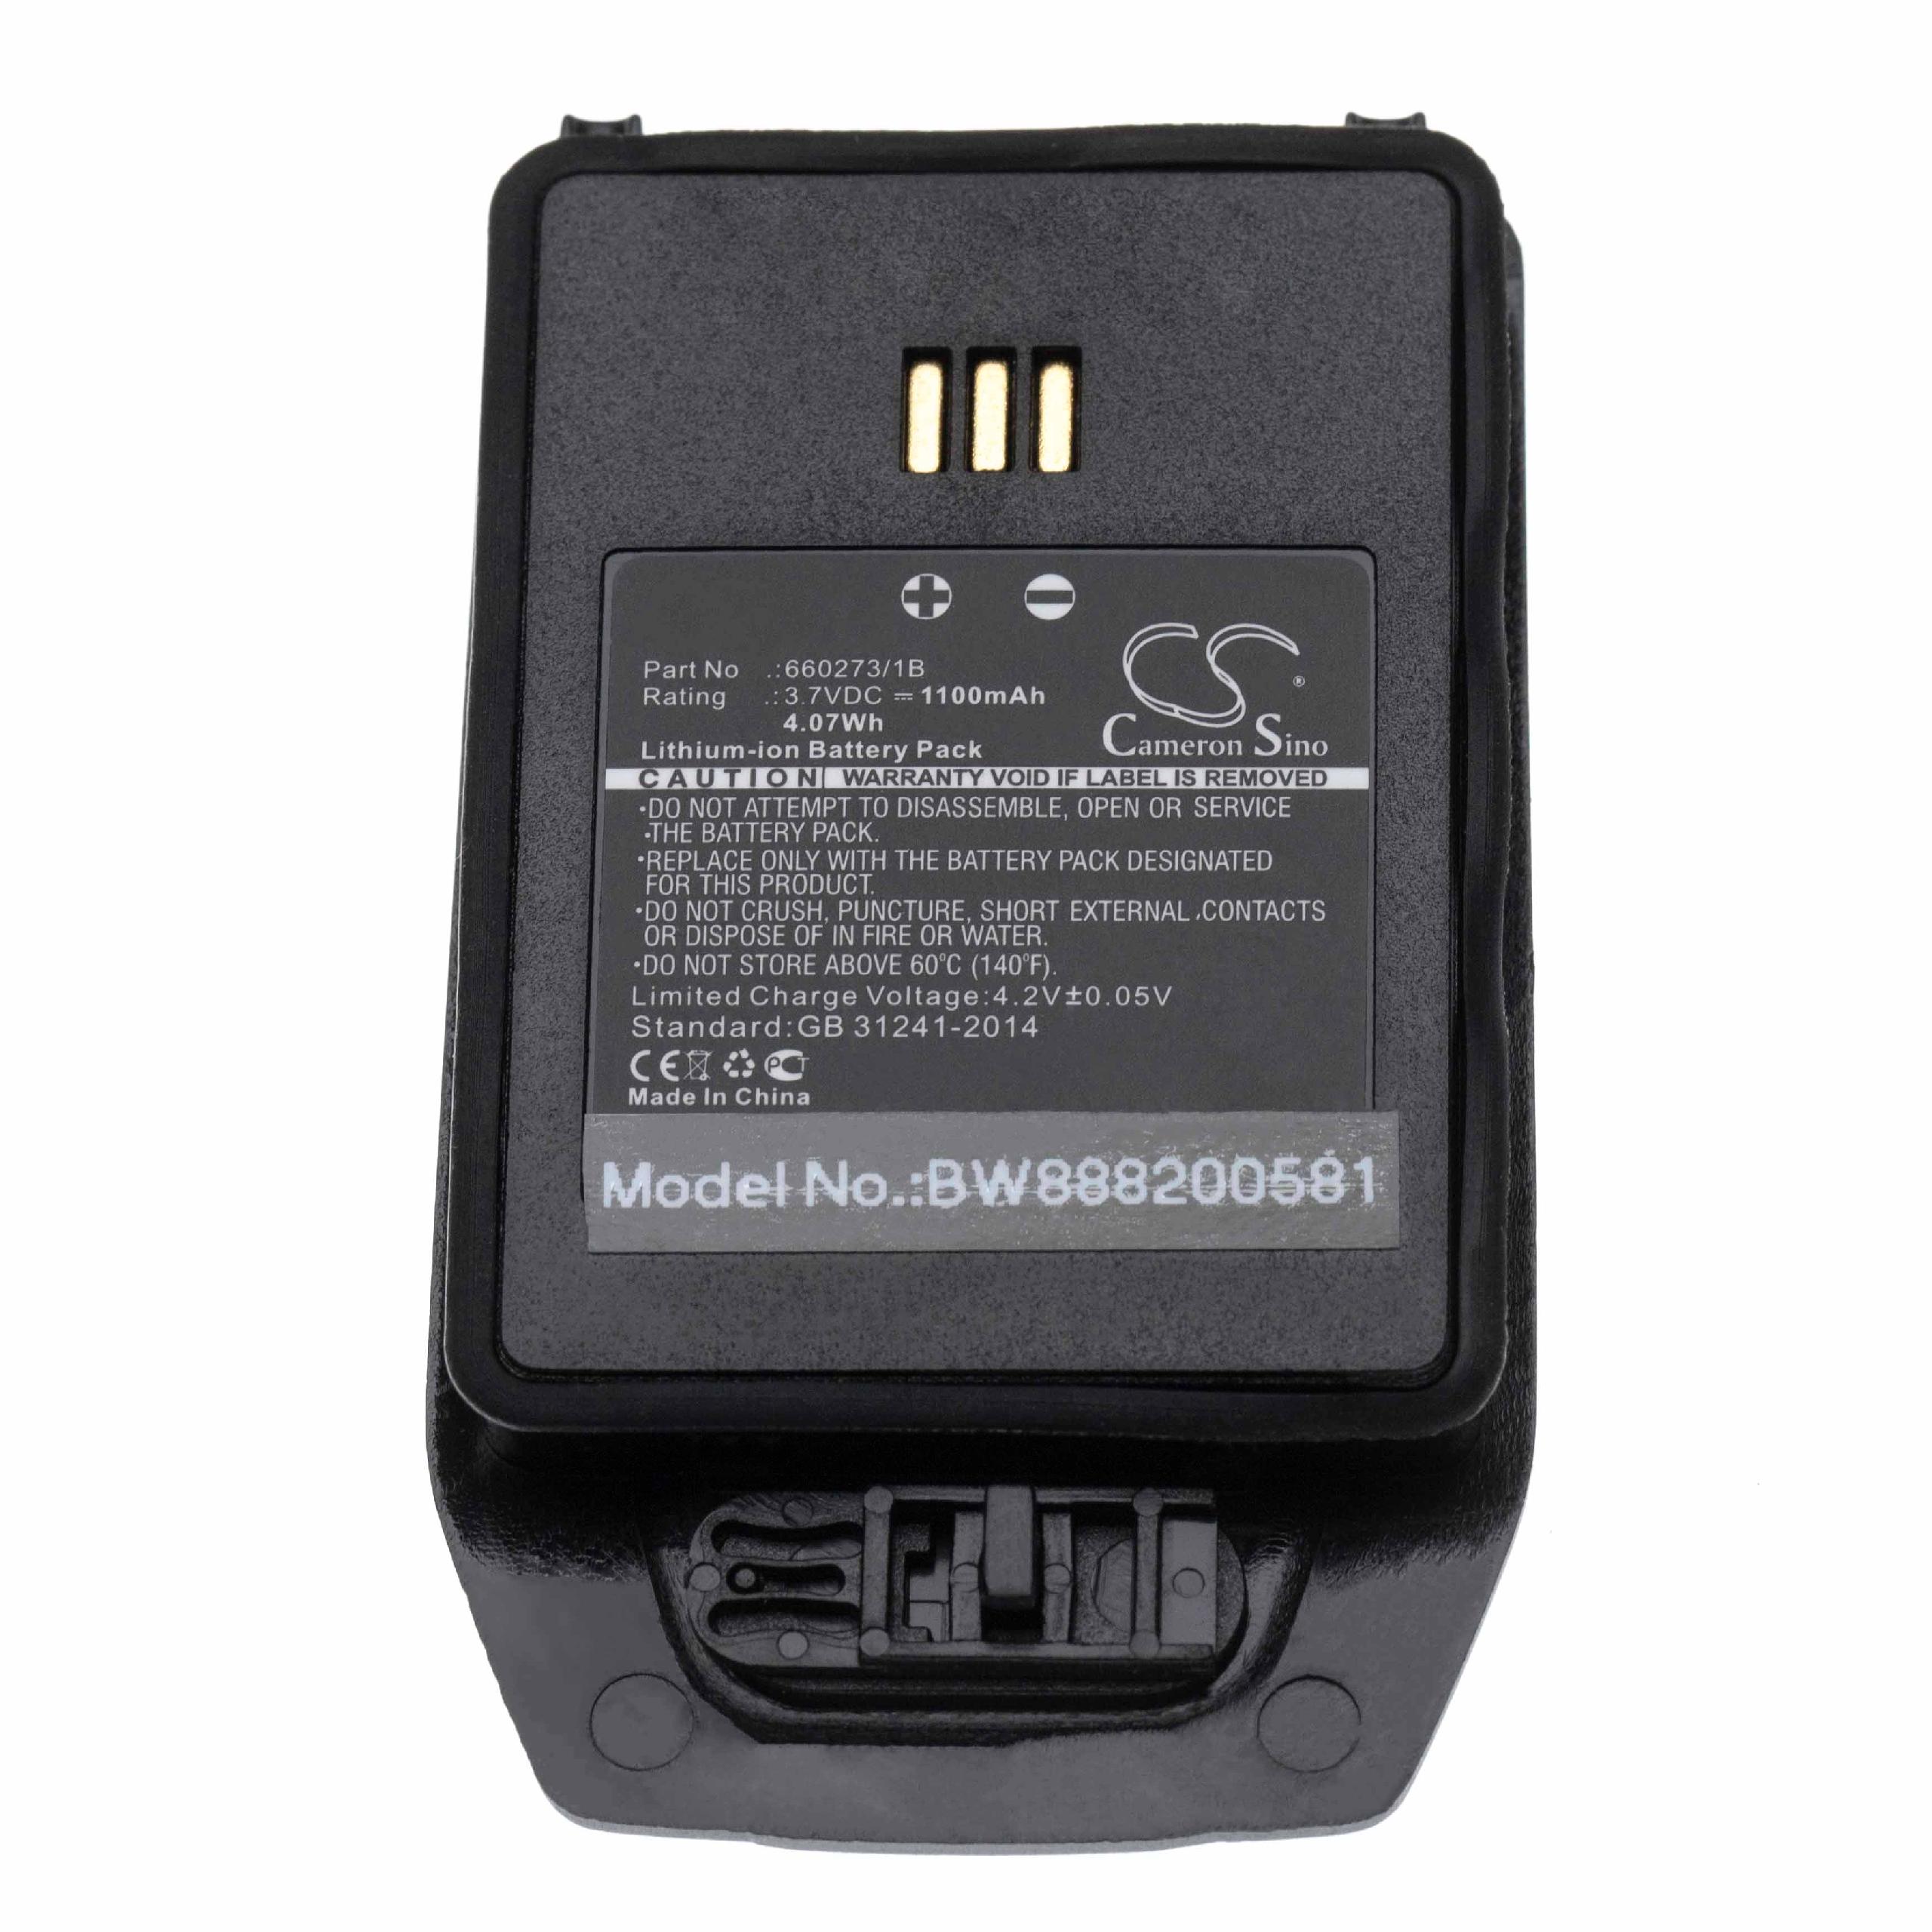 Batterie remplace Ascom 1220187, 660273/1B pour téléphone portable - 1100mAh, 3,7V, Li-ion